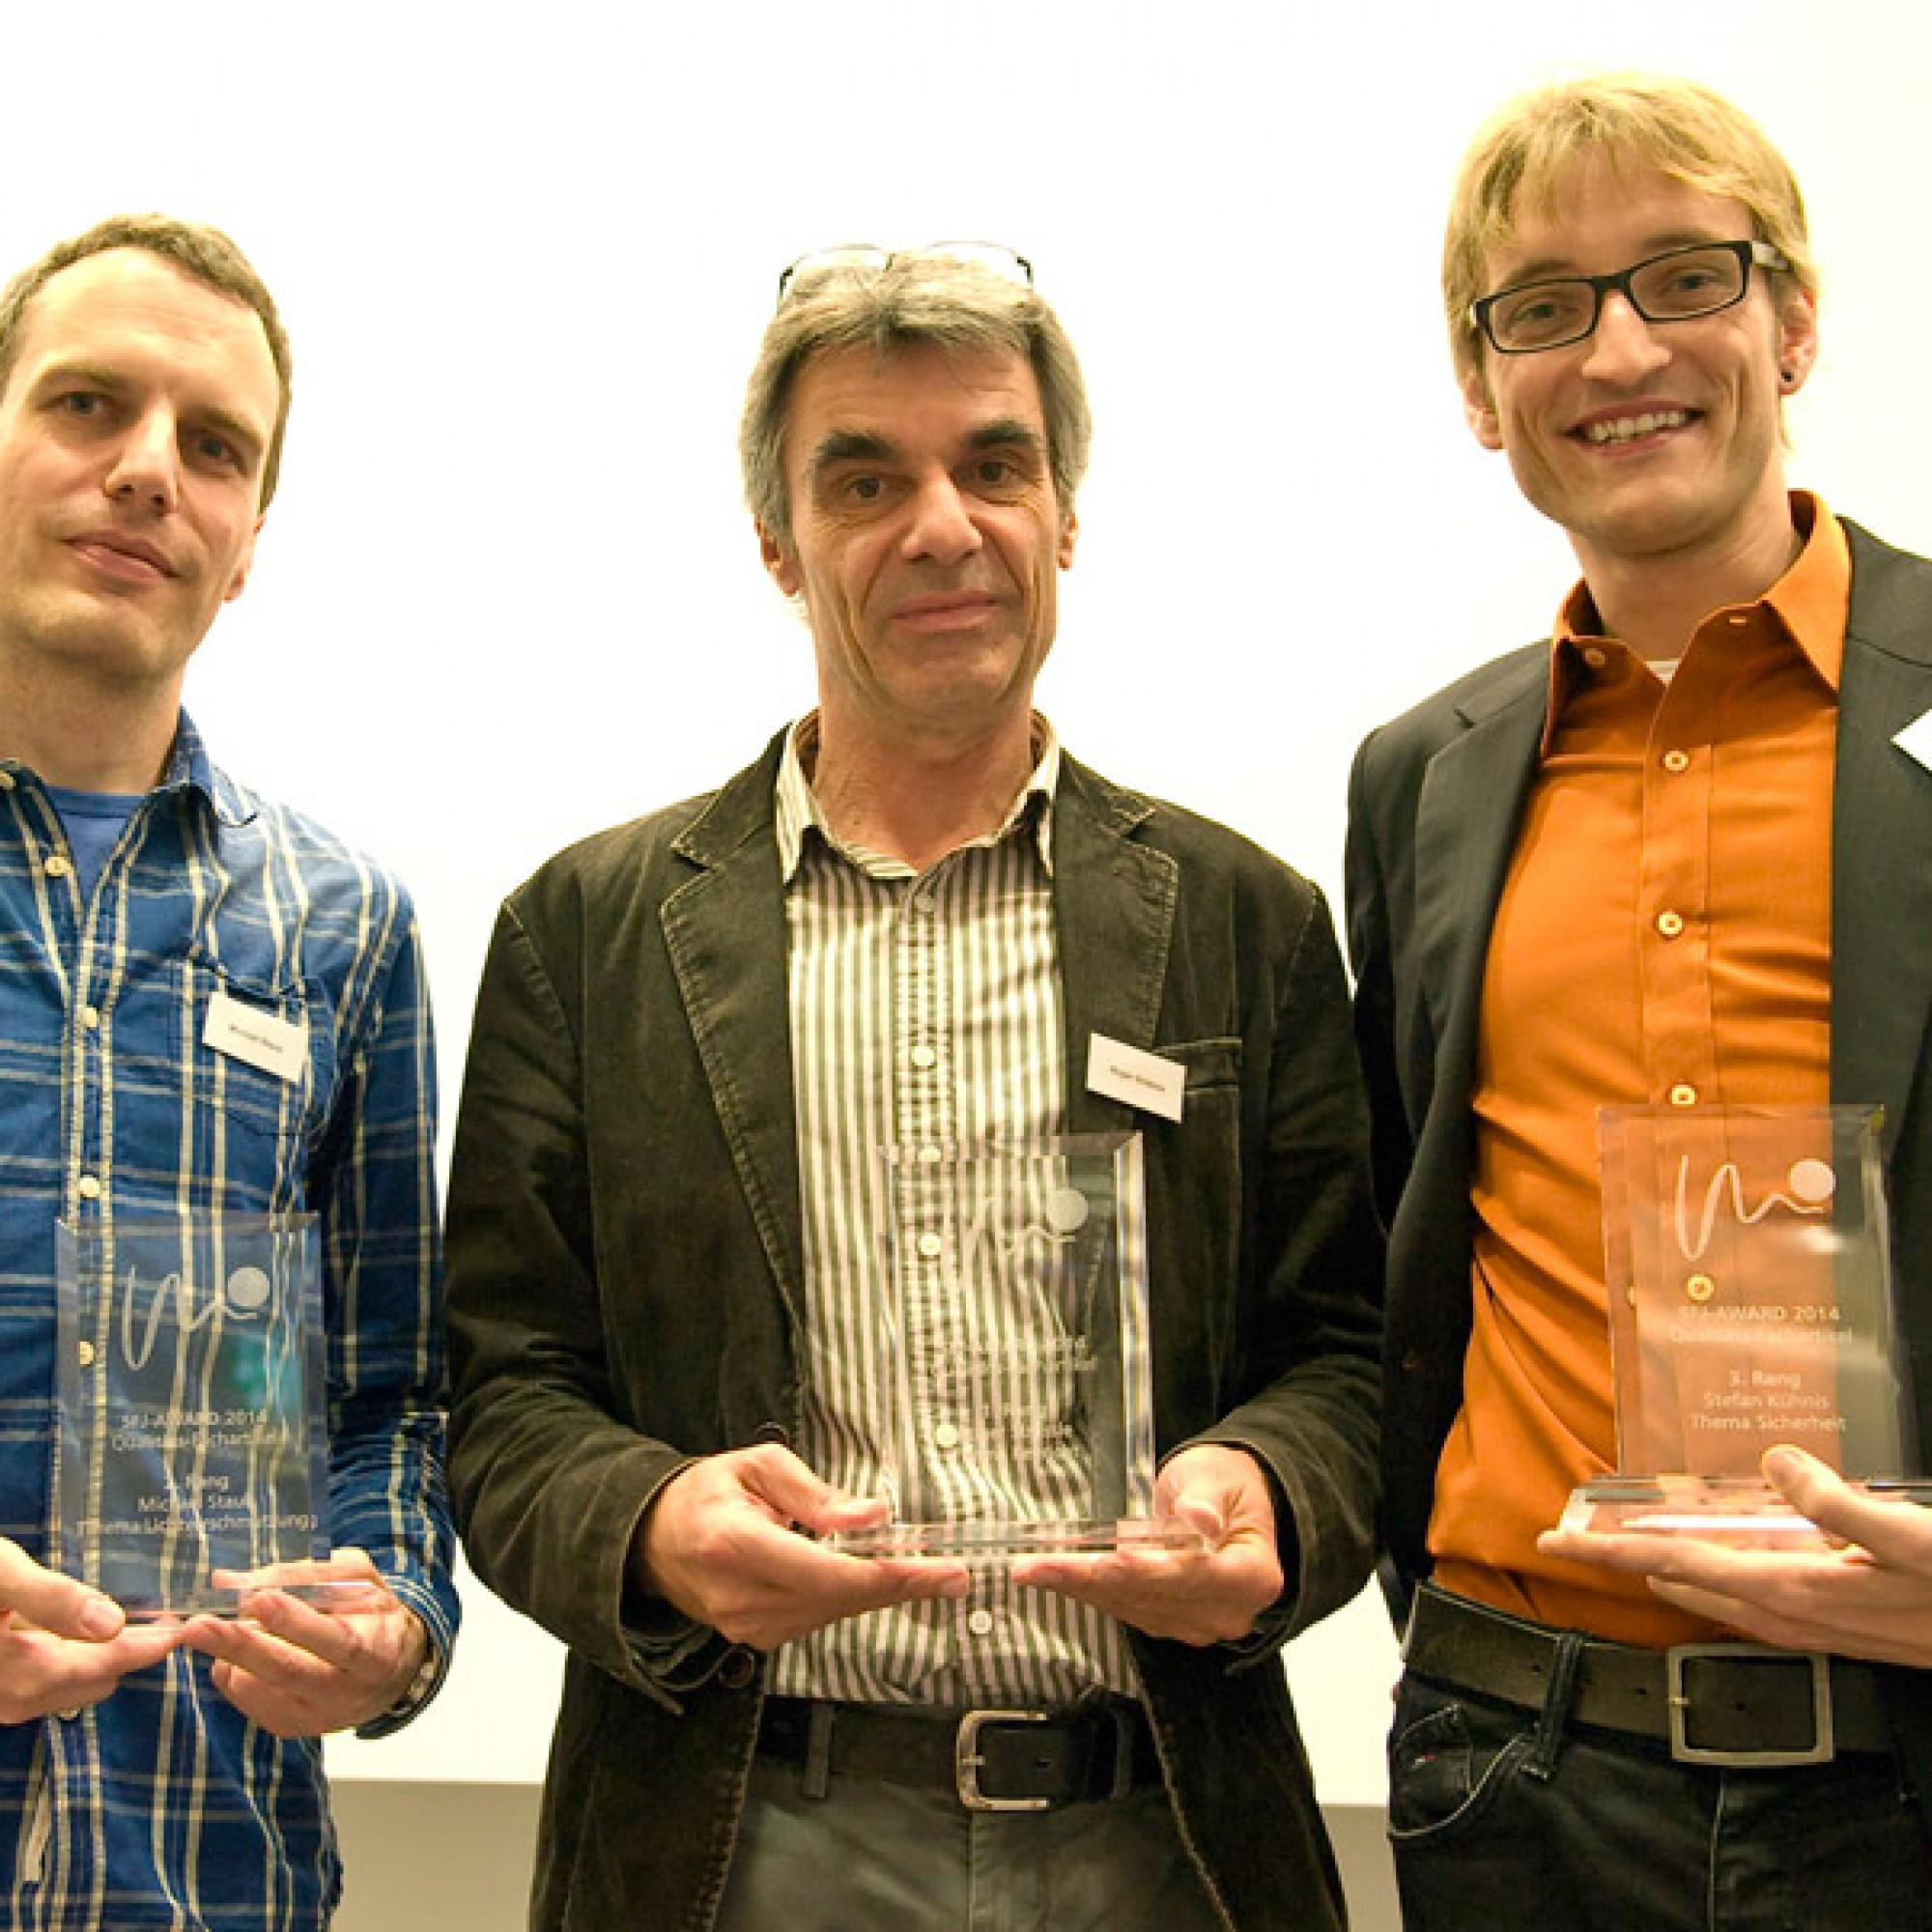 Die Preisträger (v.l.n.r.): Michael Staub, Roger Strässle und Stefan Kühnis. (Foto Ch. Hilbrand)